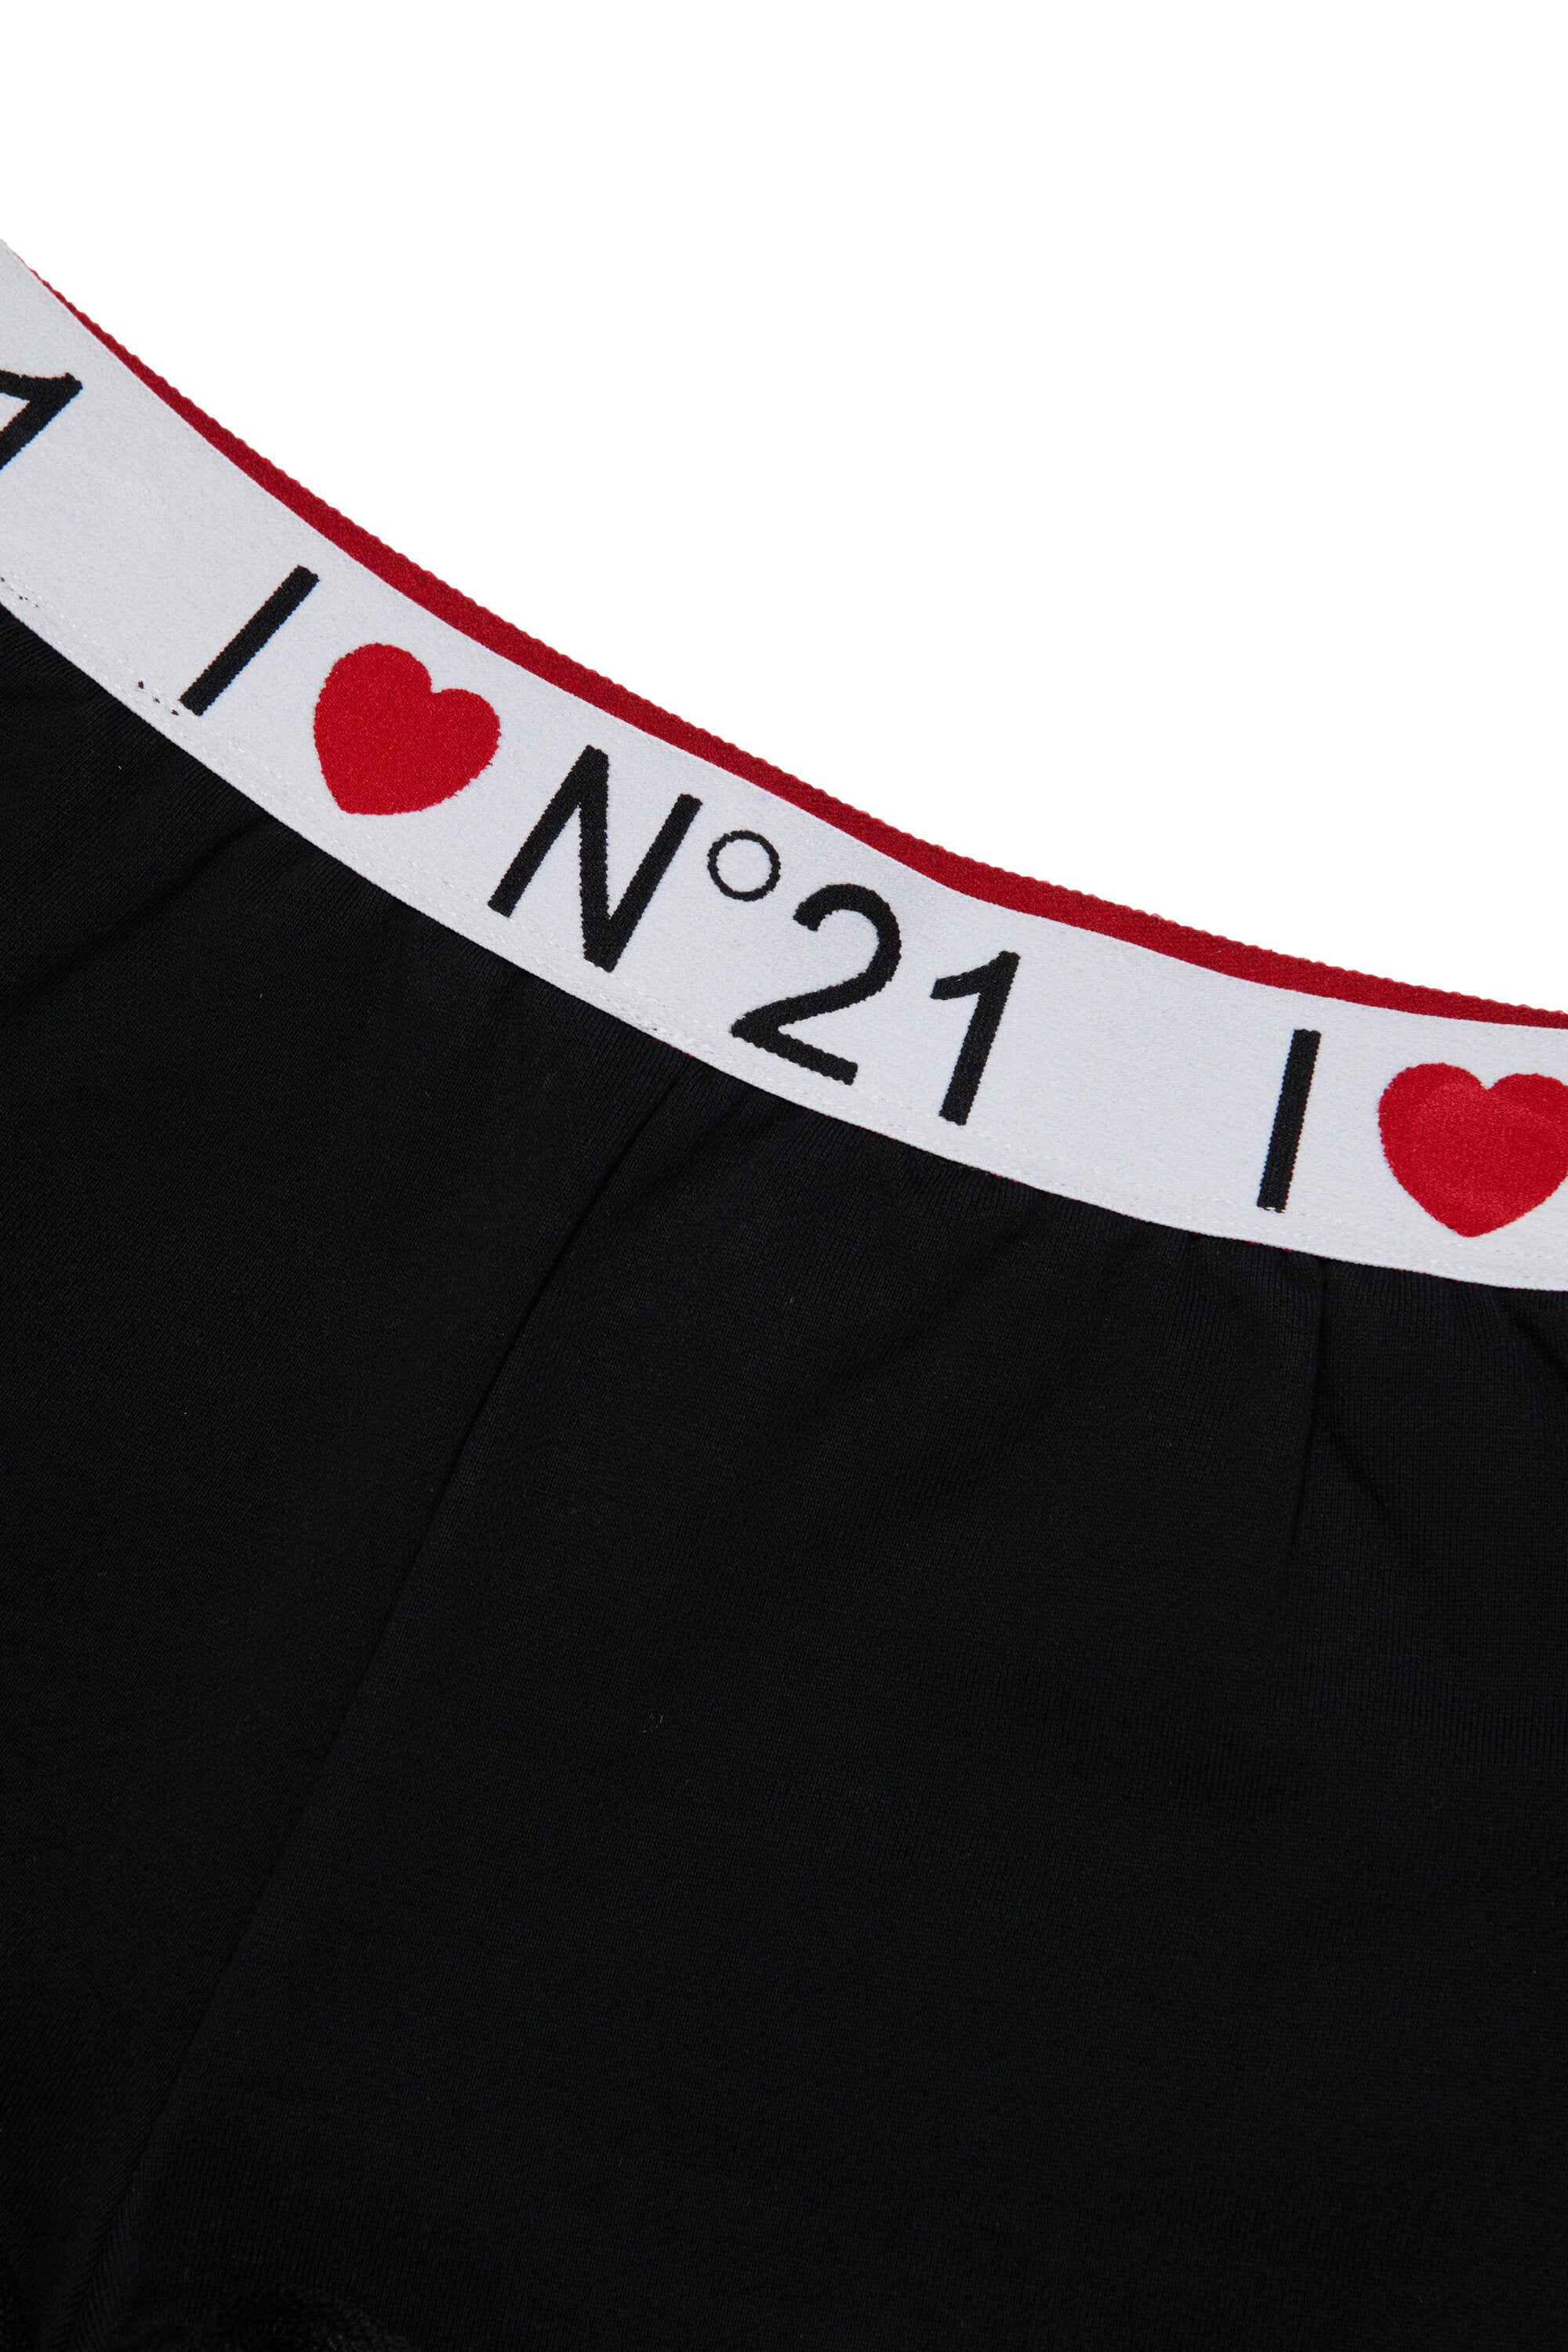 Pantalones cortos en chándal con logotipo I Love N°21